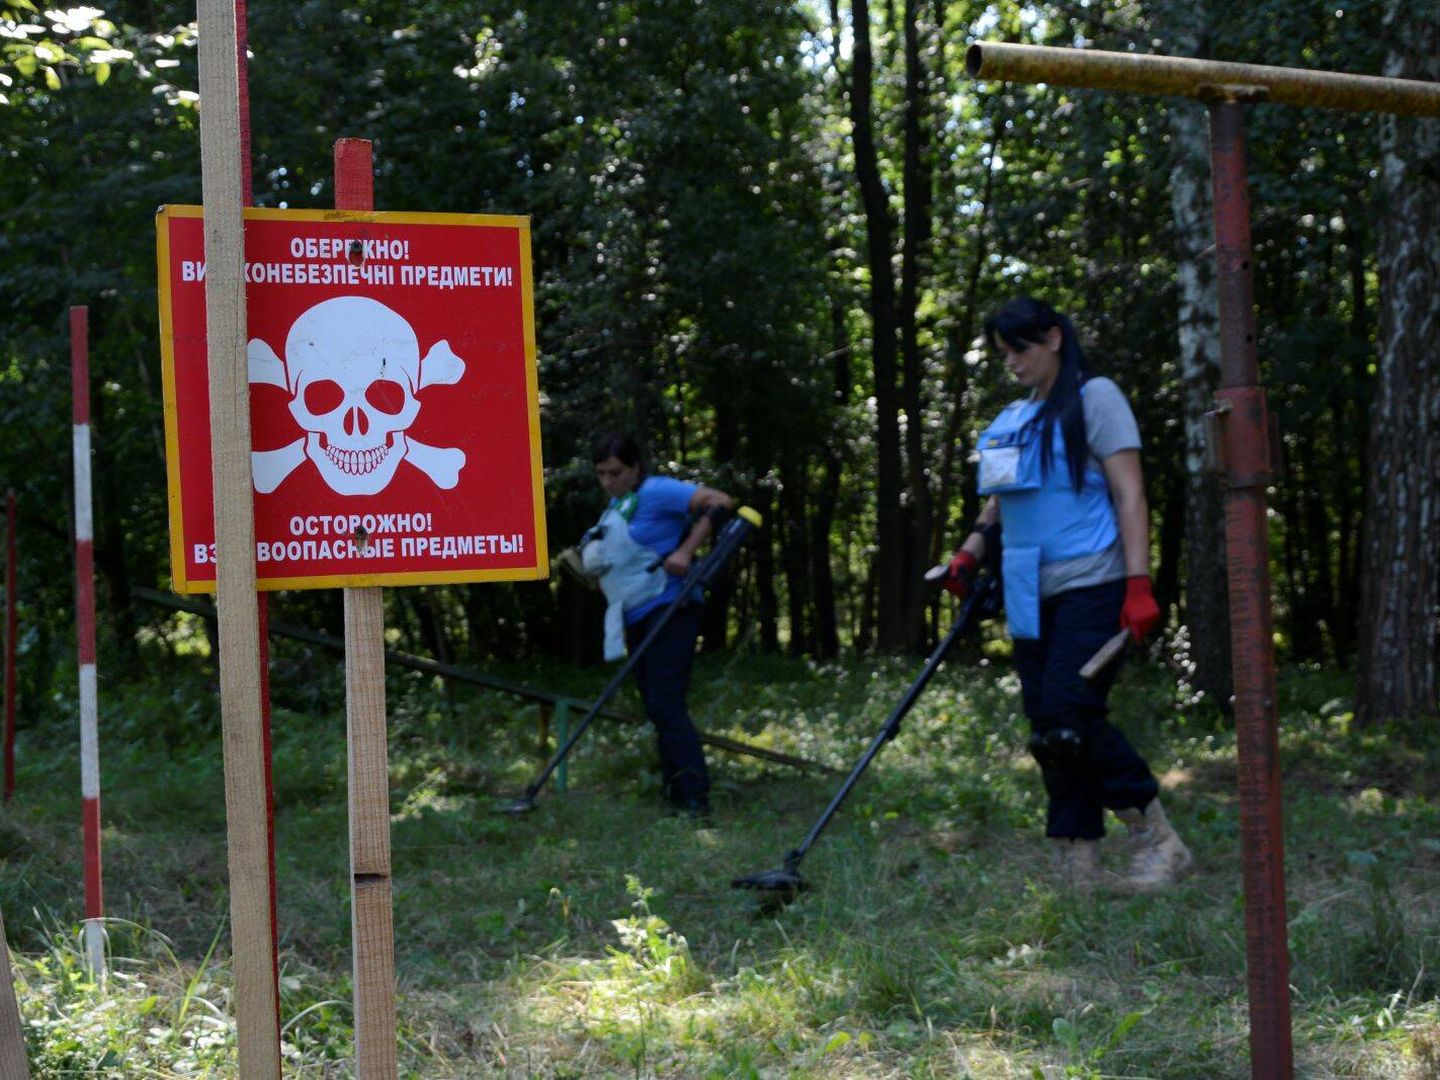 Los trabajadores de la organización HALO rastrean la zona en busca de artefactos explosivos. (M. R.)